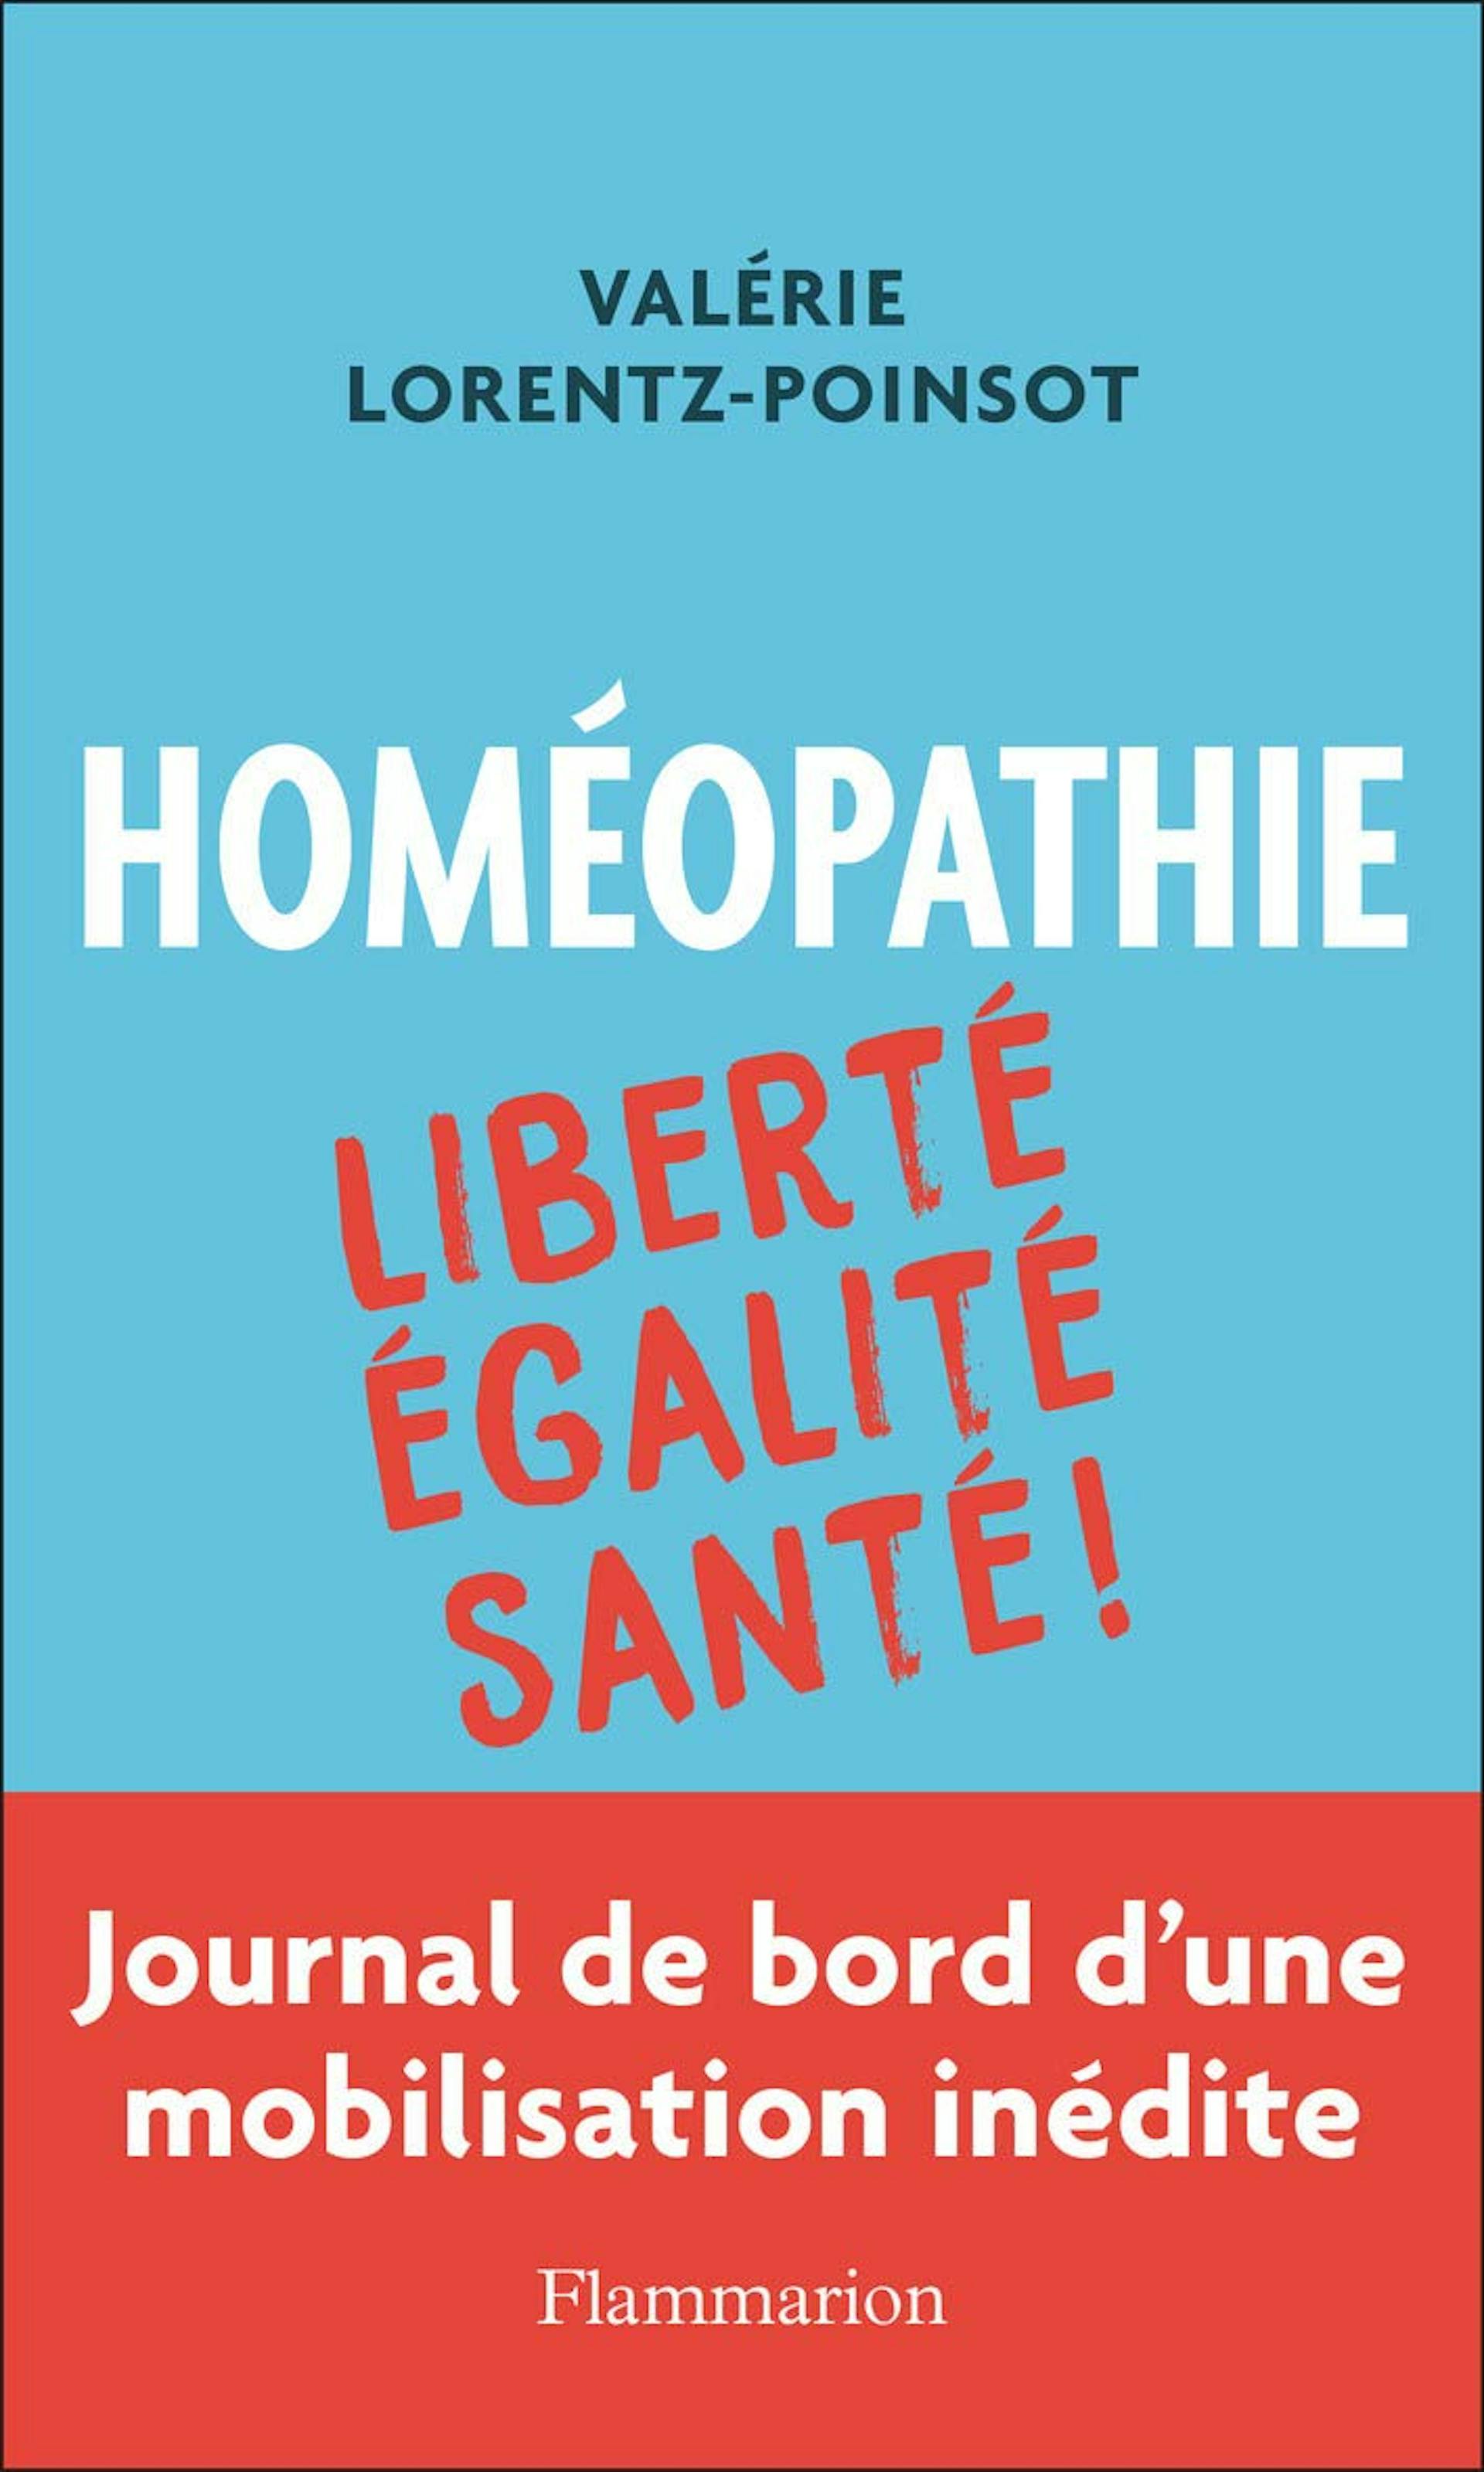 "Homéopathie - Liberté Égalité Santé !" par Valérie Lorentz-Poinsot